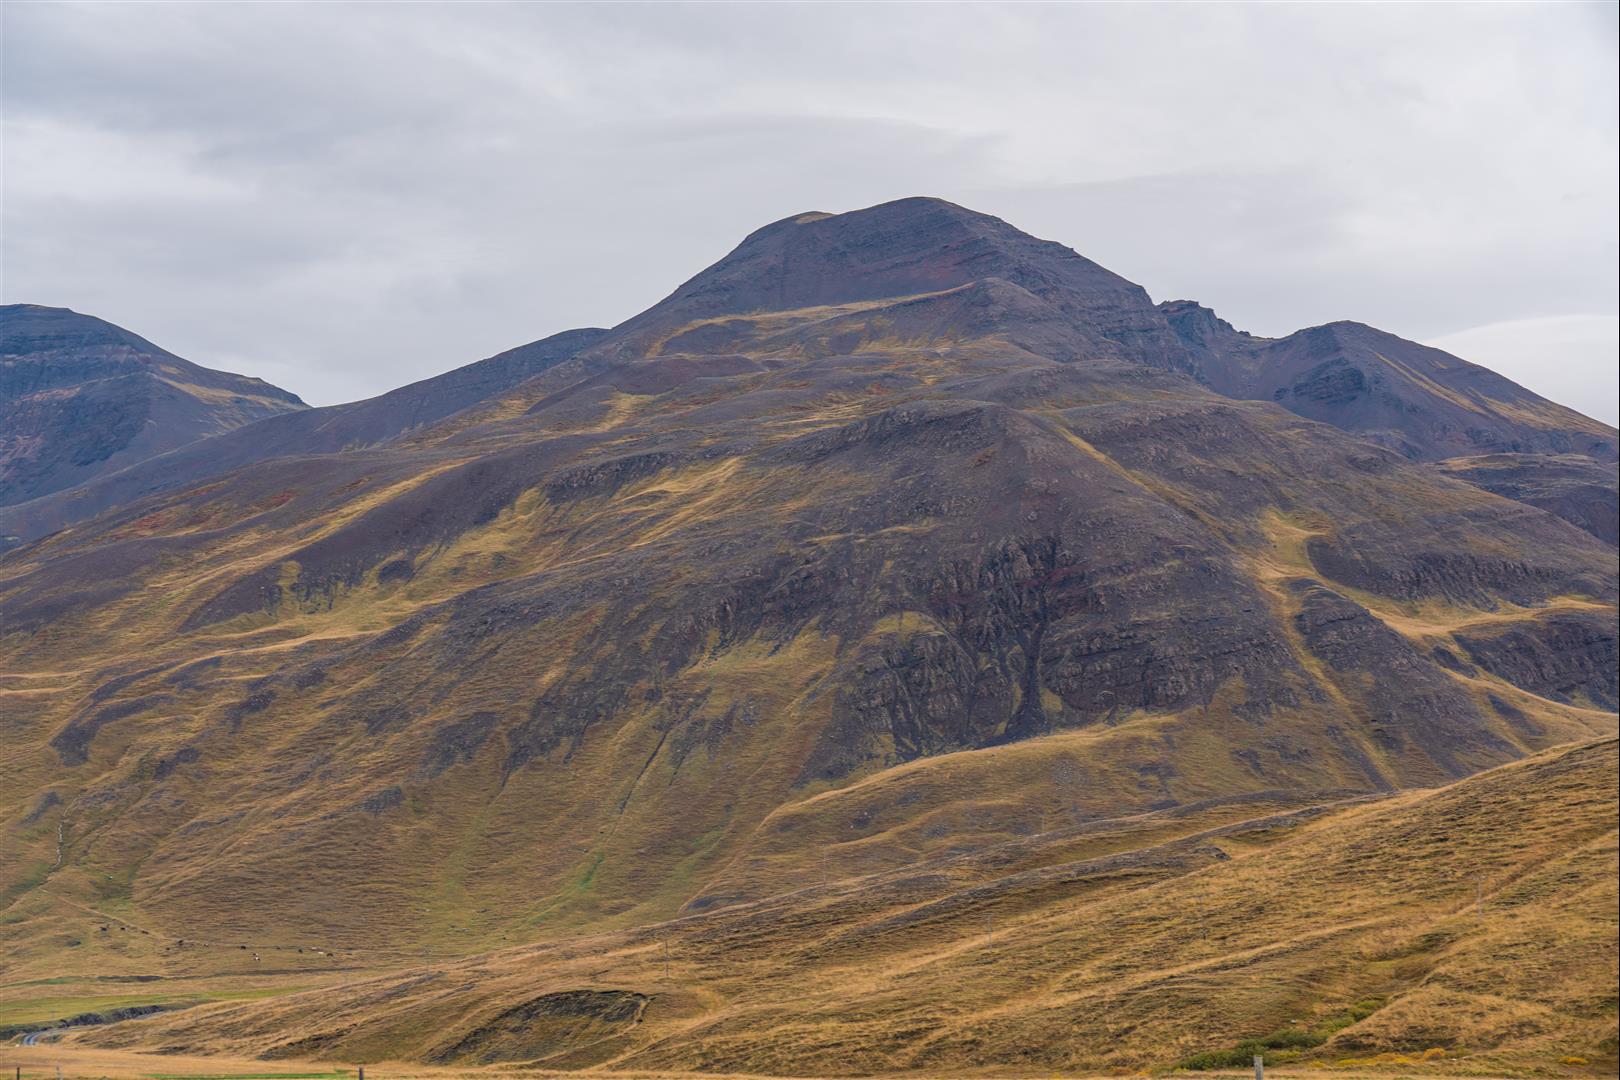 [冰島] 2019 冰島極光自助旅行 Day03 – 華姆斯唐吉、巨人峽谷、草屋博物館、阿克雷里